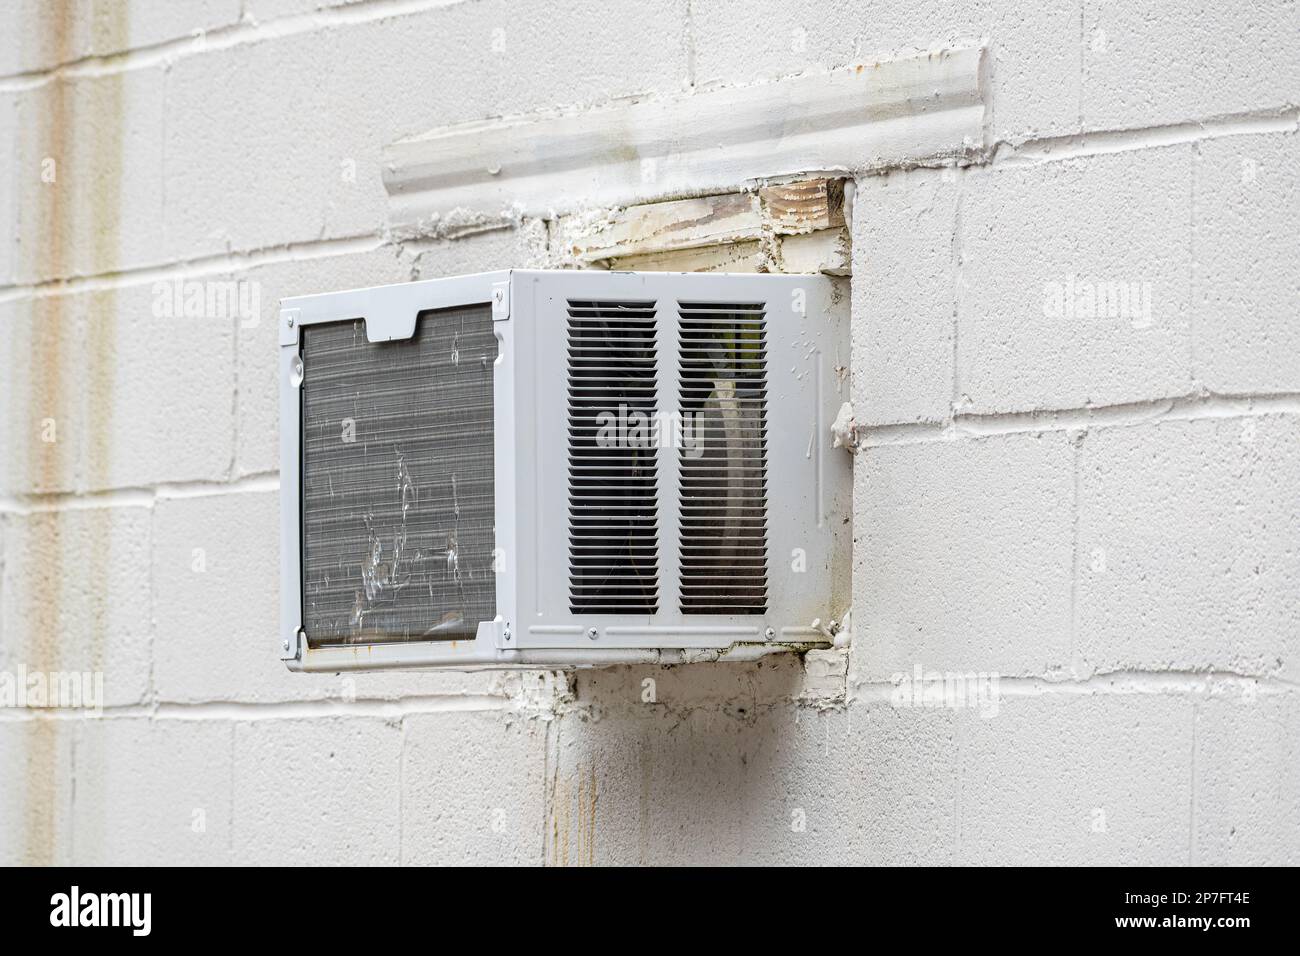 Horizontaler Schuss eines zerschmetterten Klimaanlagenfensters in einer Betonwand. Stockfoto